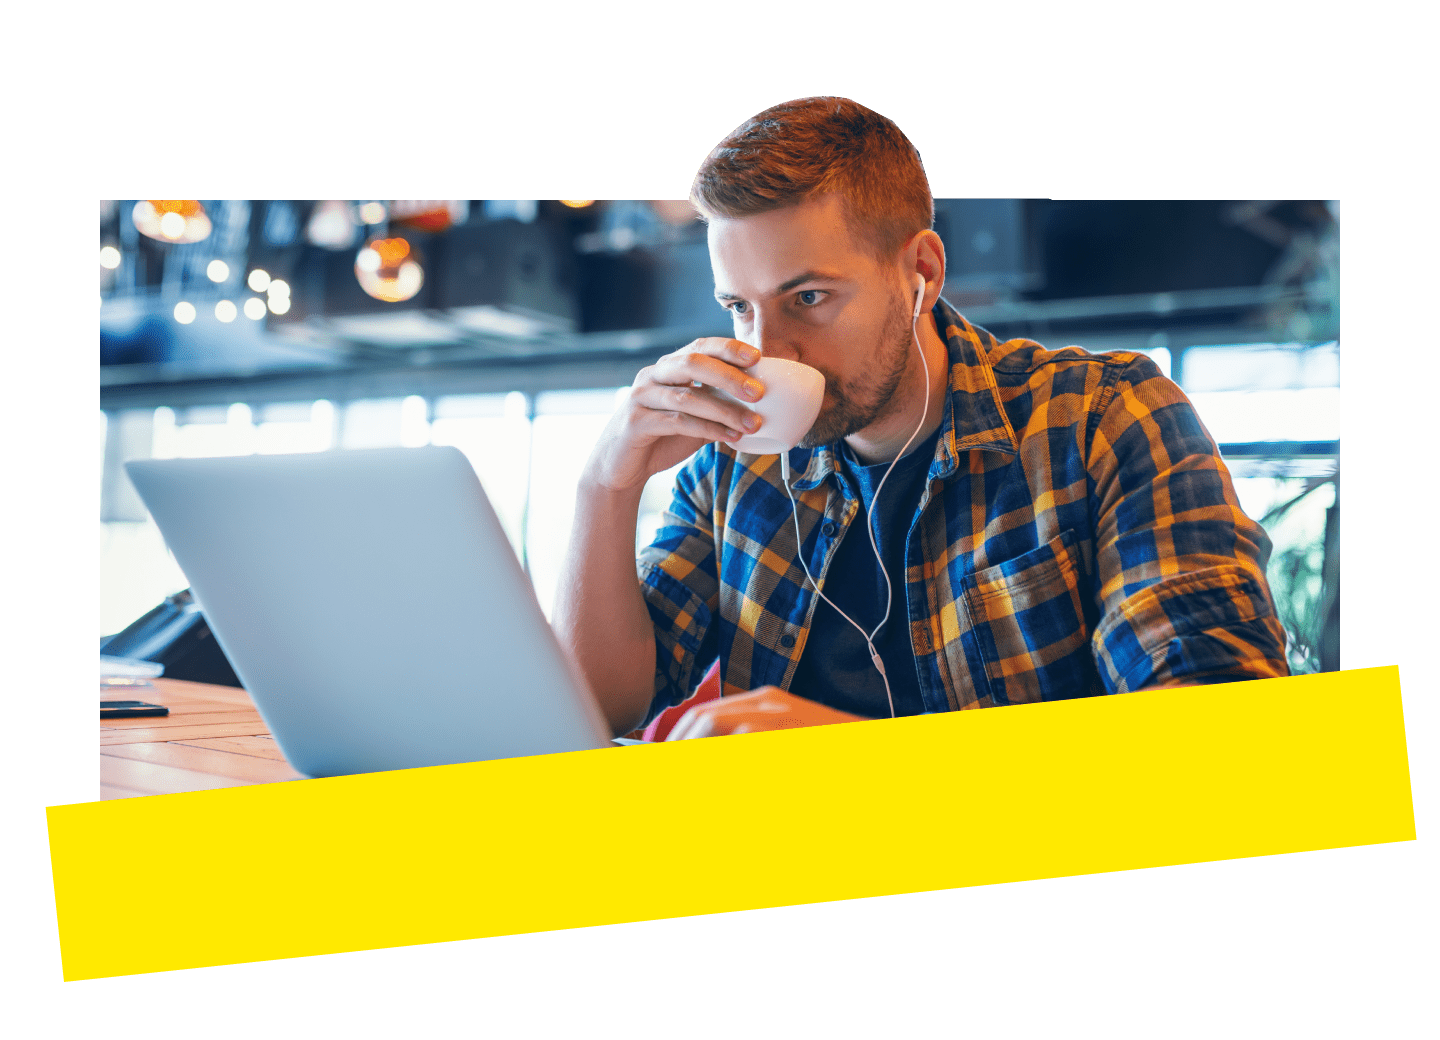 Ein Mitarbeiter arbeitet mit GoTo Connect per Fernzugriff in einem Café am Laptop.